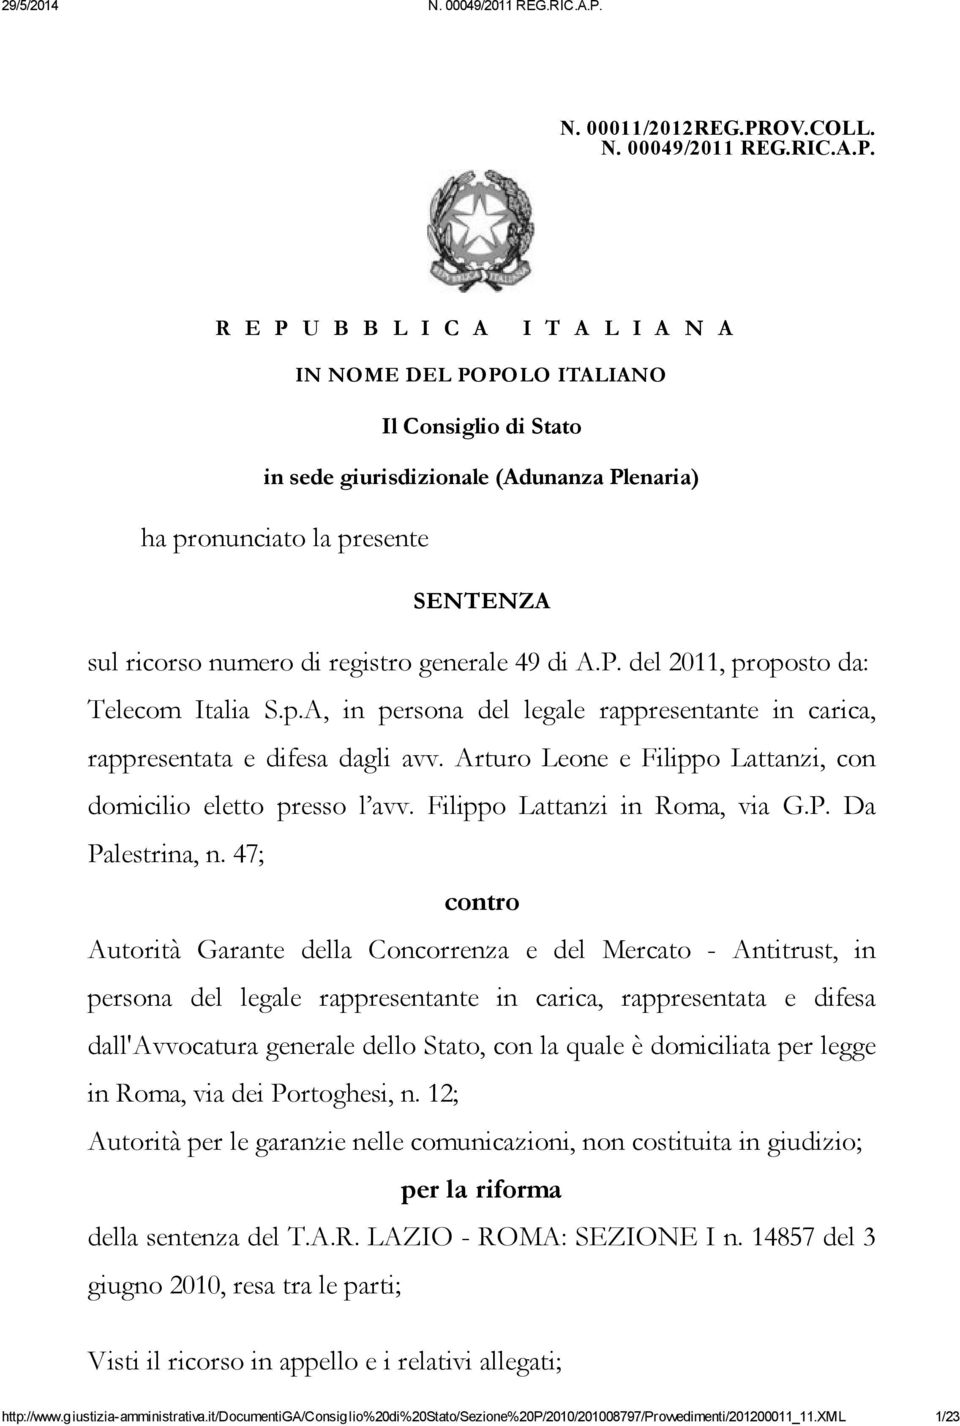 R E P U B B L I C A I T A L I A N A IN NOME DEL POPOLO ITALIANO Il Consiglio di Stato in sede giurisdizionale (Adunanza Plenaria) ha pronunciato la presente SENTENZA sul ricorso numero di registro